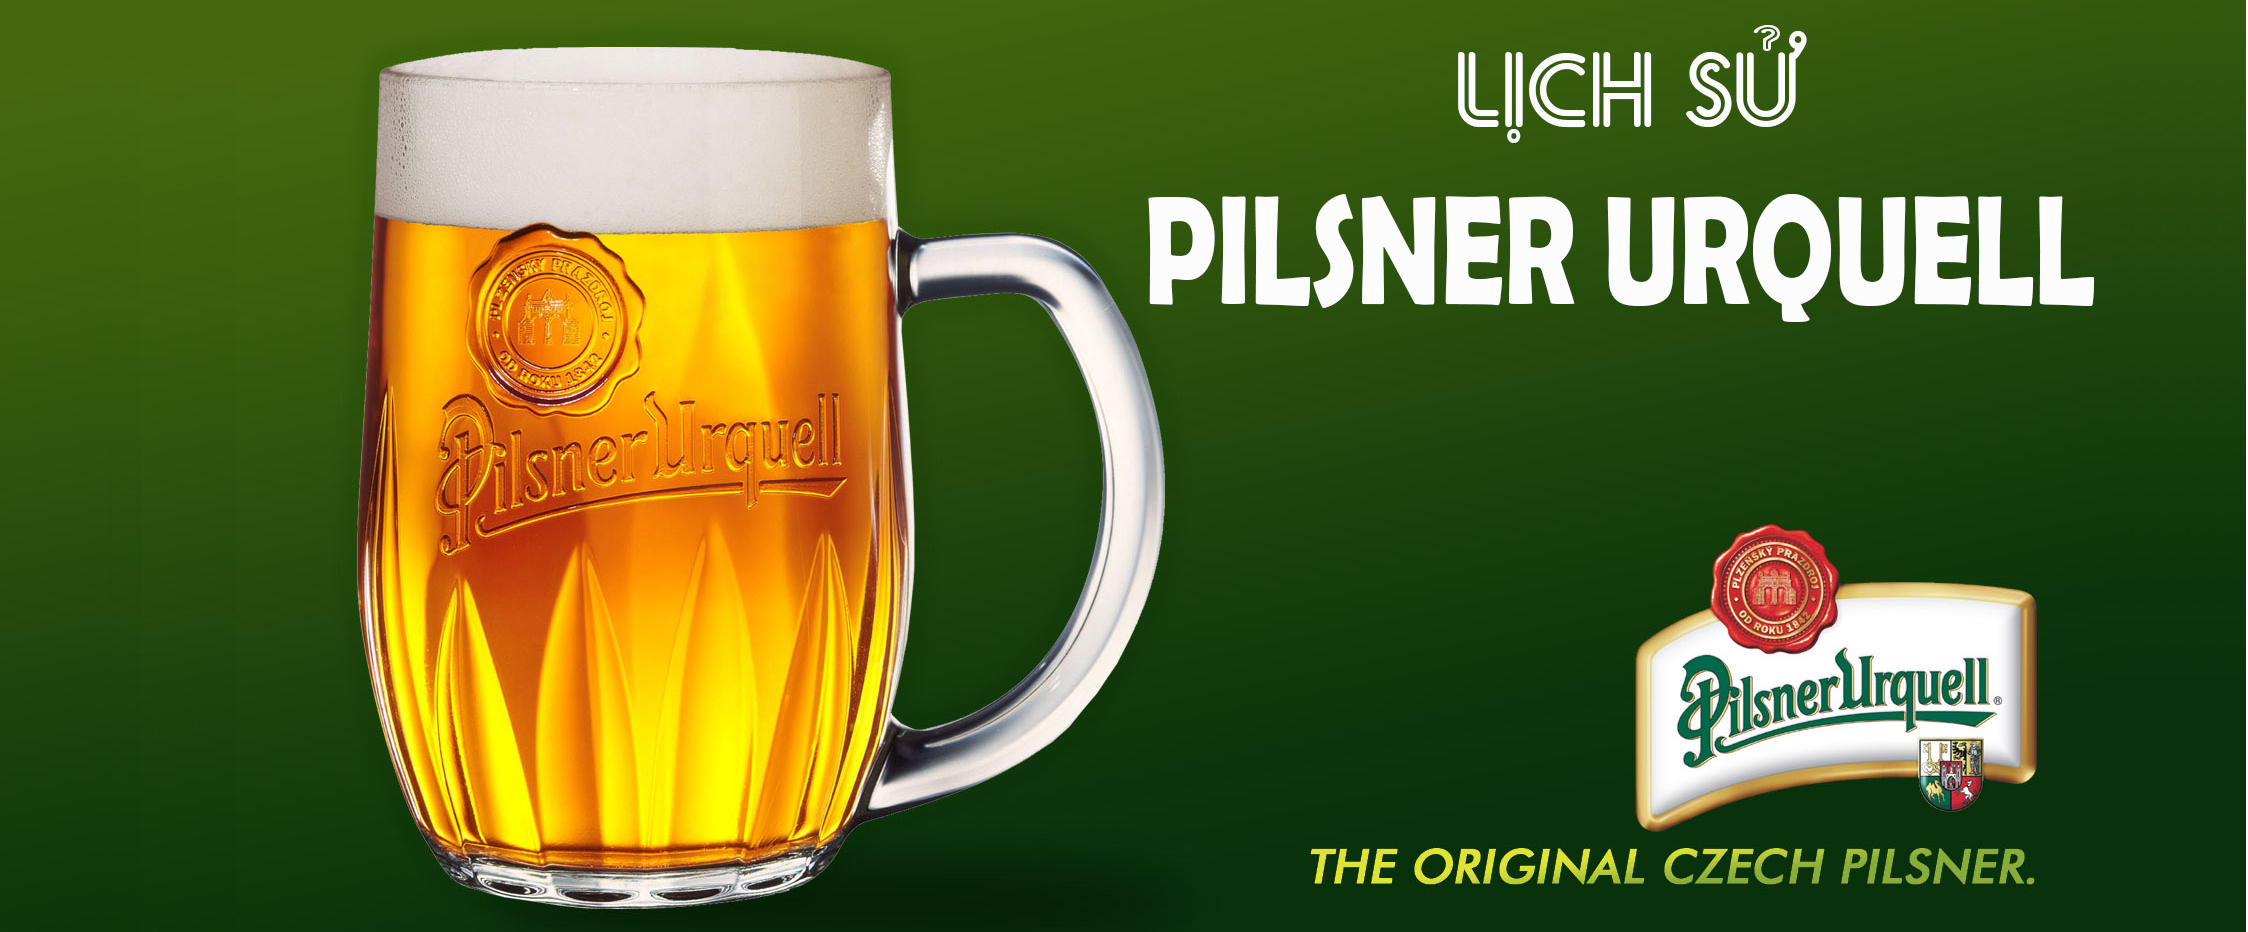 Pilsner Urquell – A Natural Medicine, a Friend for Every Man.